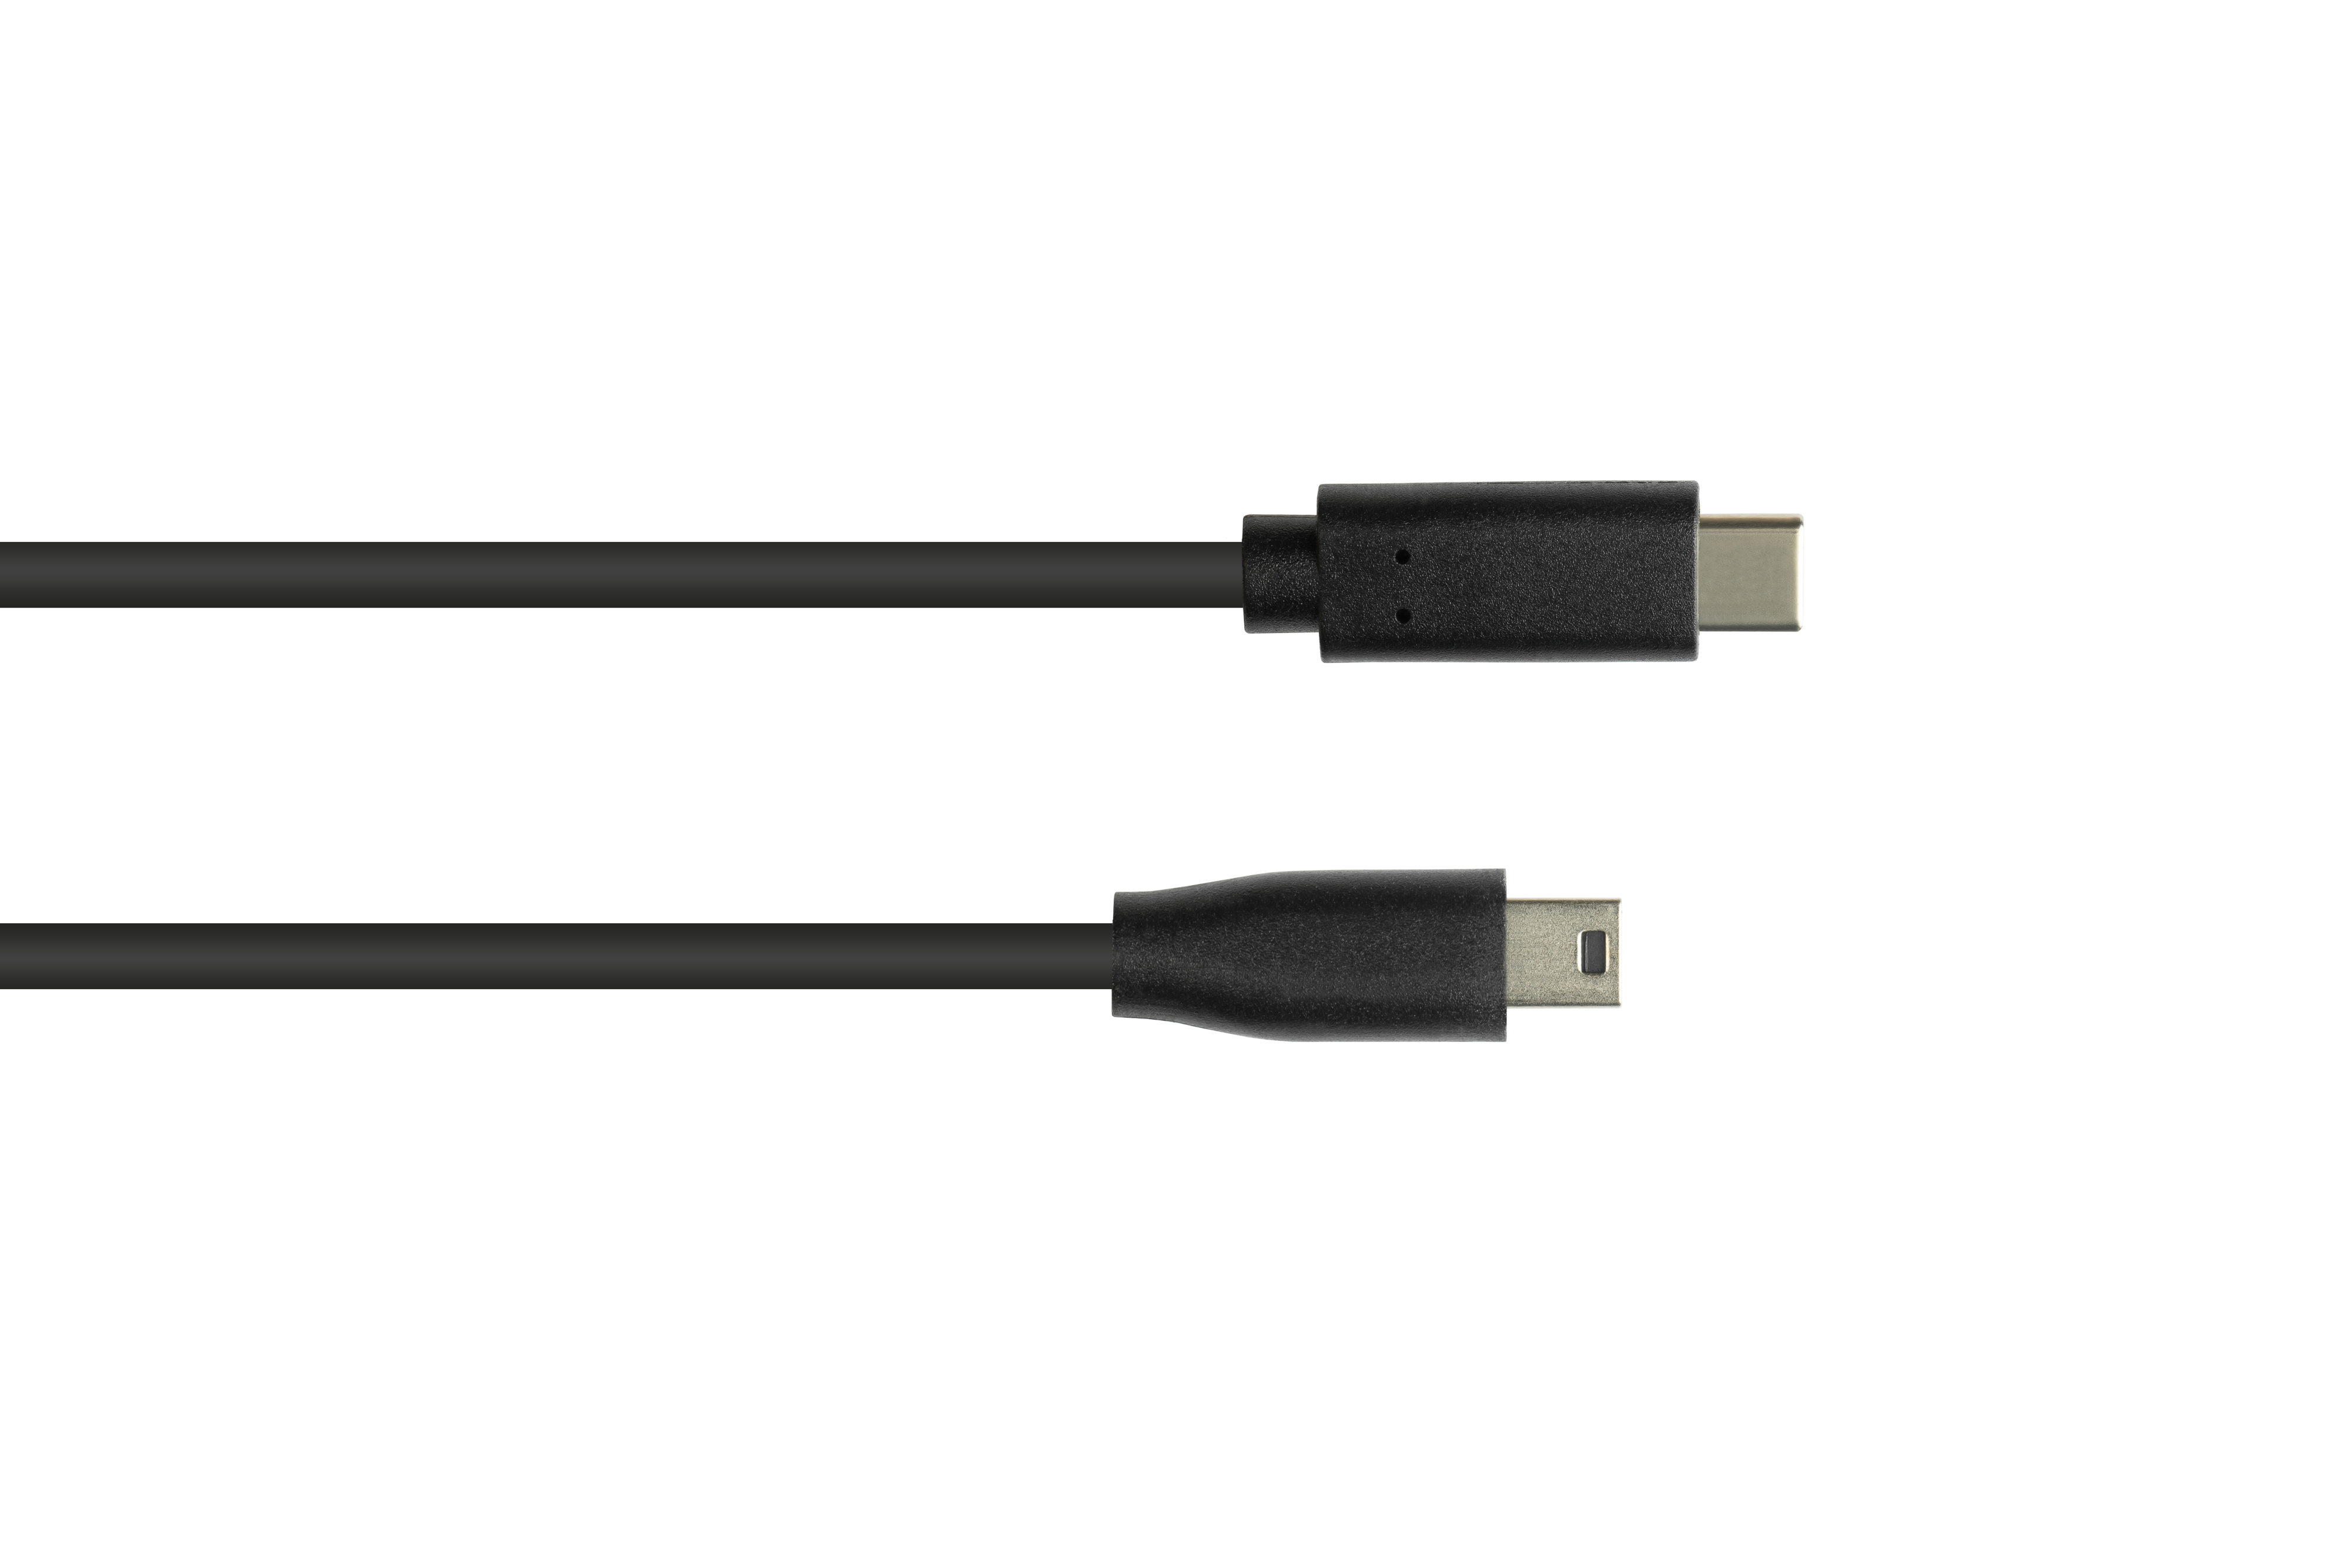 GOOD CONNECTIONS USB USB-C™ schwarz 5-pin, Mini 2.0, Stecker B Anschlusskabel Stecker an